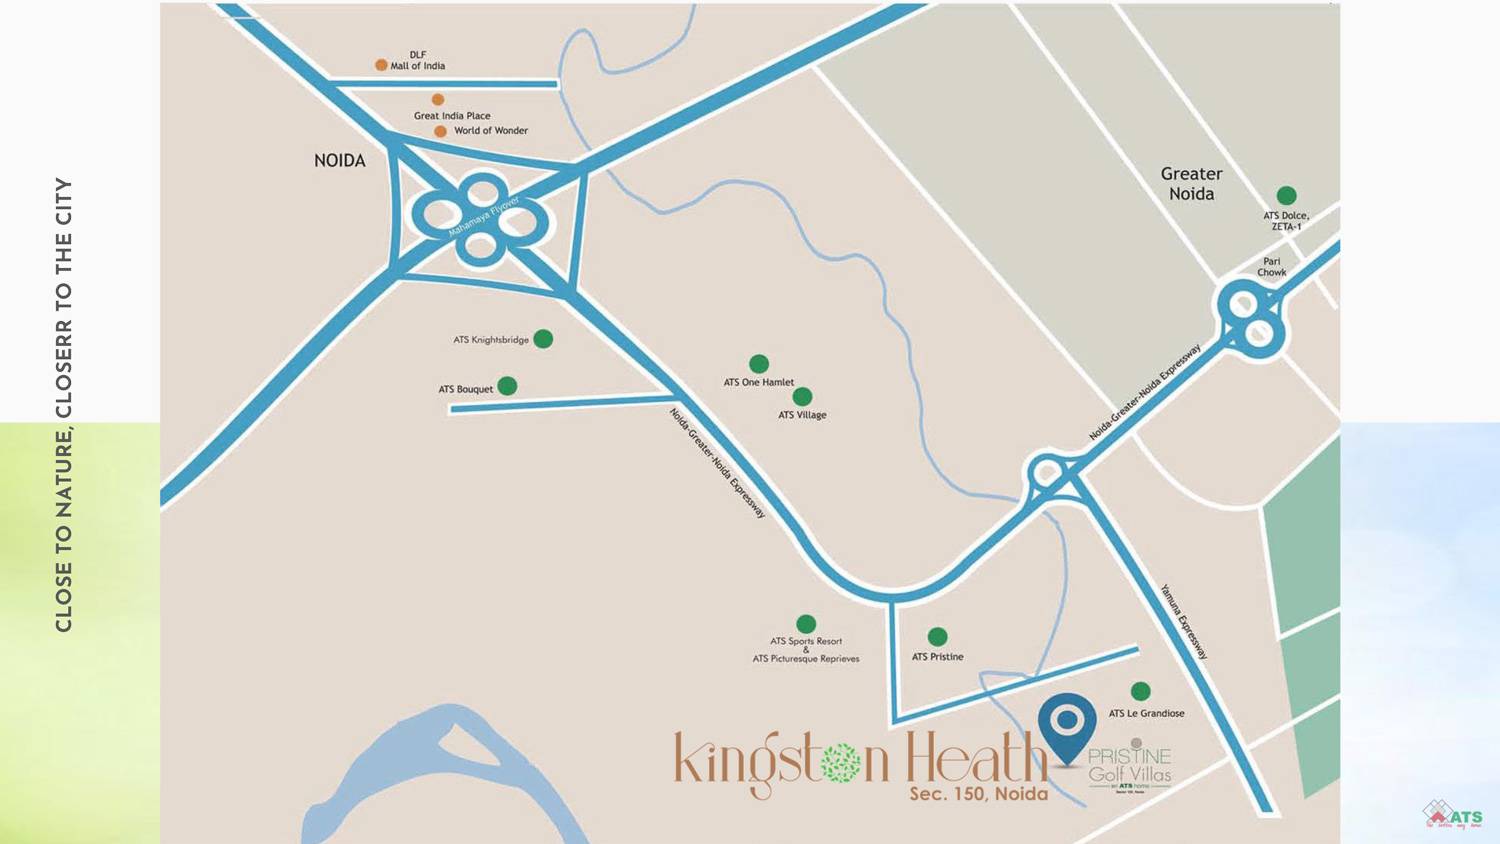 ATS Kingston Heath  - Location Map